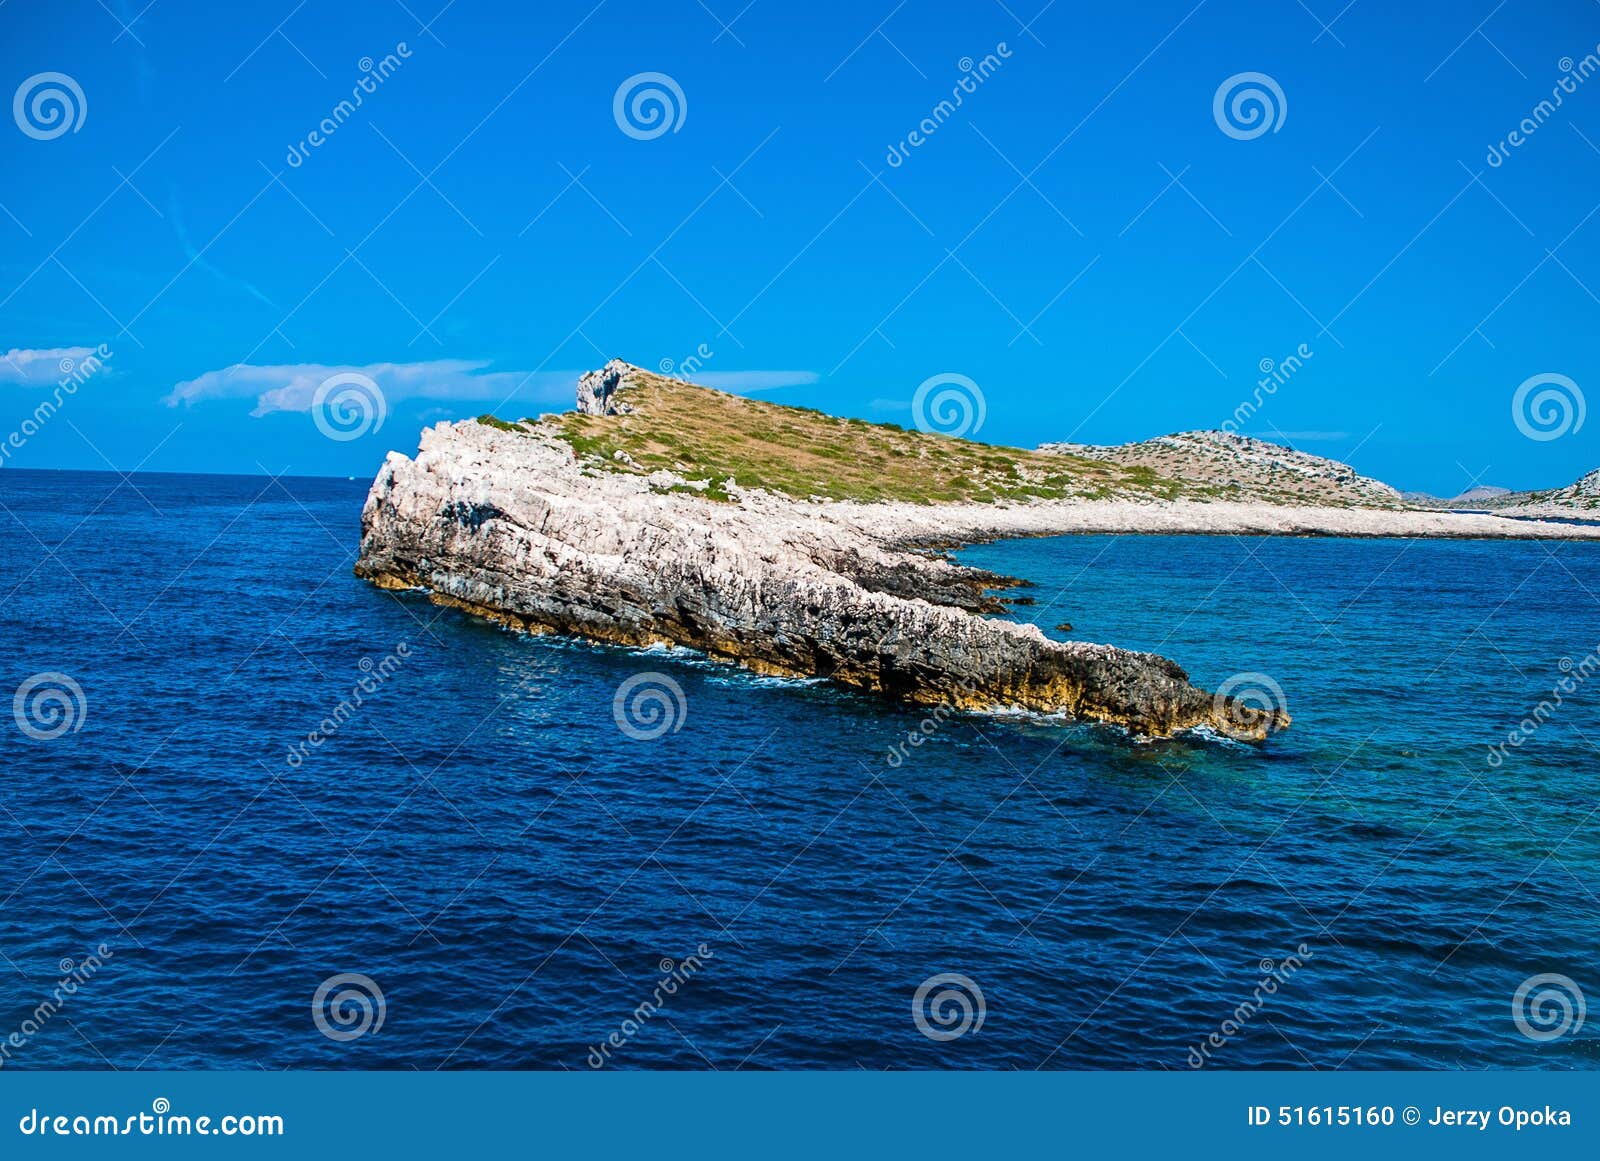 Kornati nationaal park. Schilderachtige, rotsachtige eilanden in het nationale park van Kornati in Kroatië